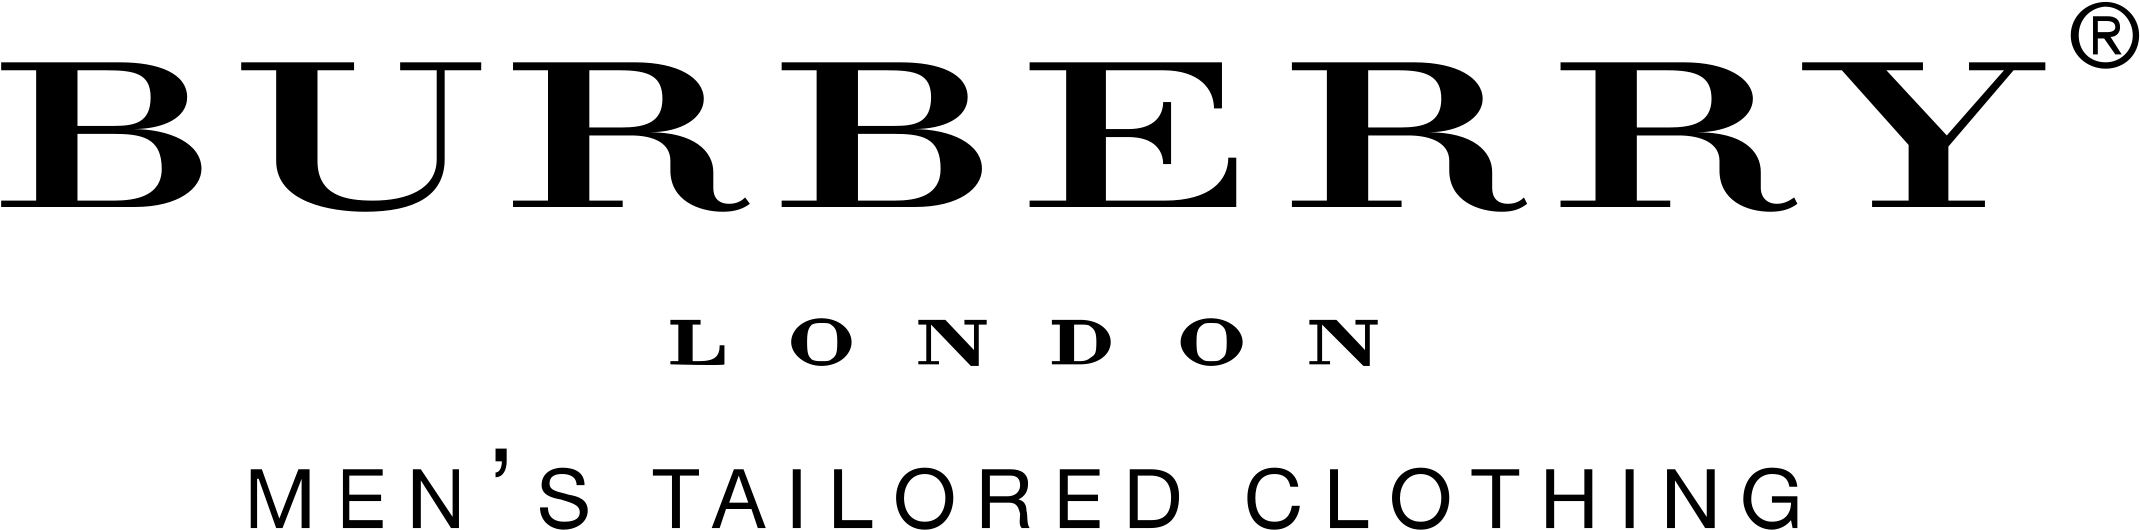 Burberry logo PNG imagen de alta calidad